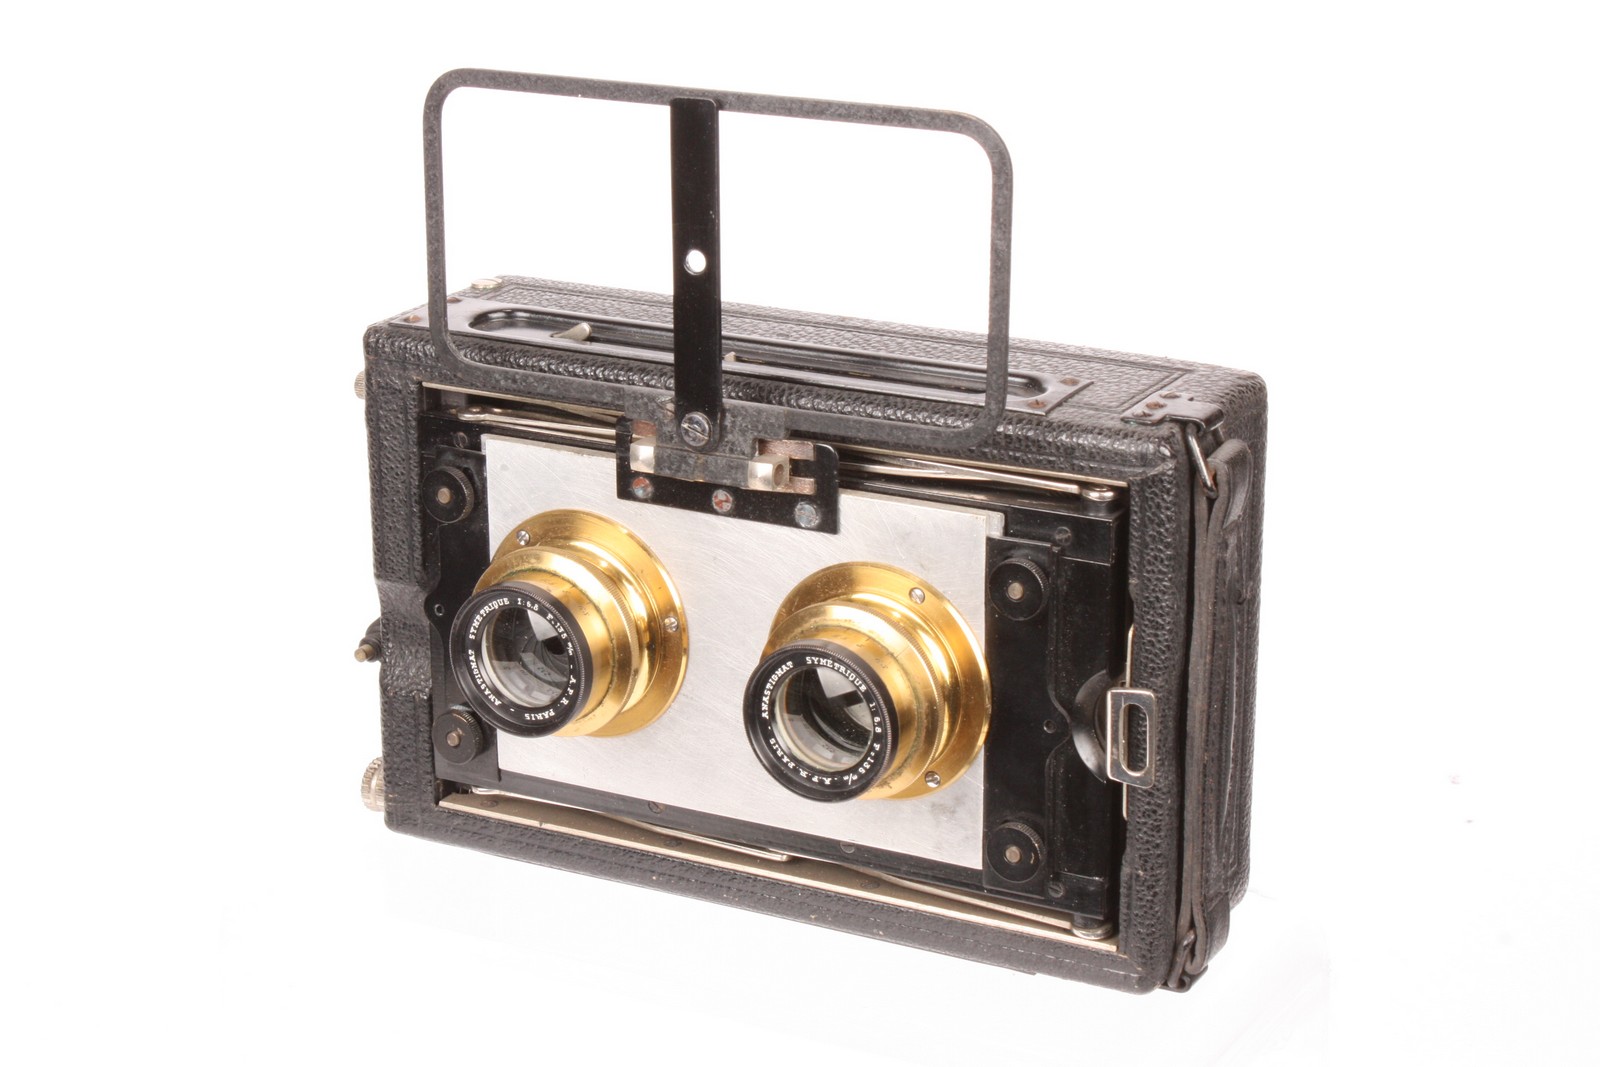 A Klopcic Stereo Camera, 6x13cm, with A.F.R Anastigmat Symmetrique f/6.8 135mm lenses, serial nos.